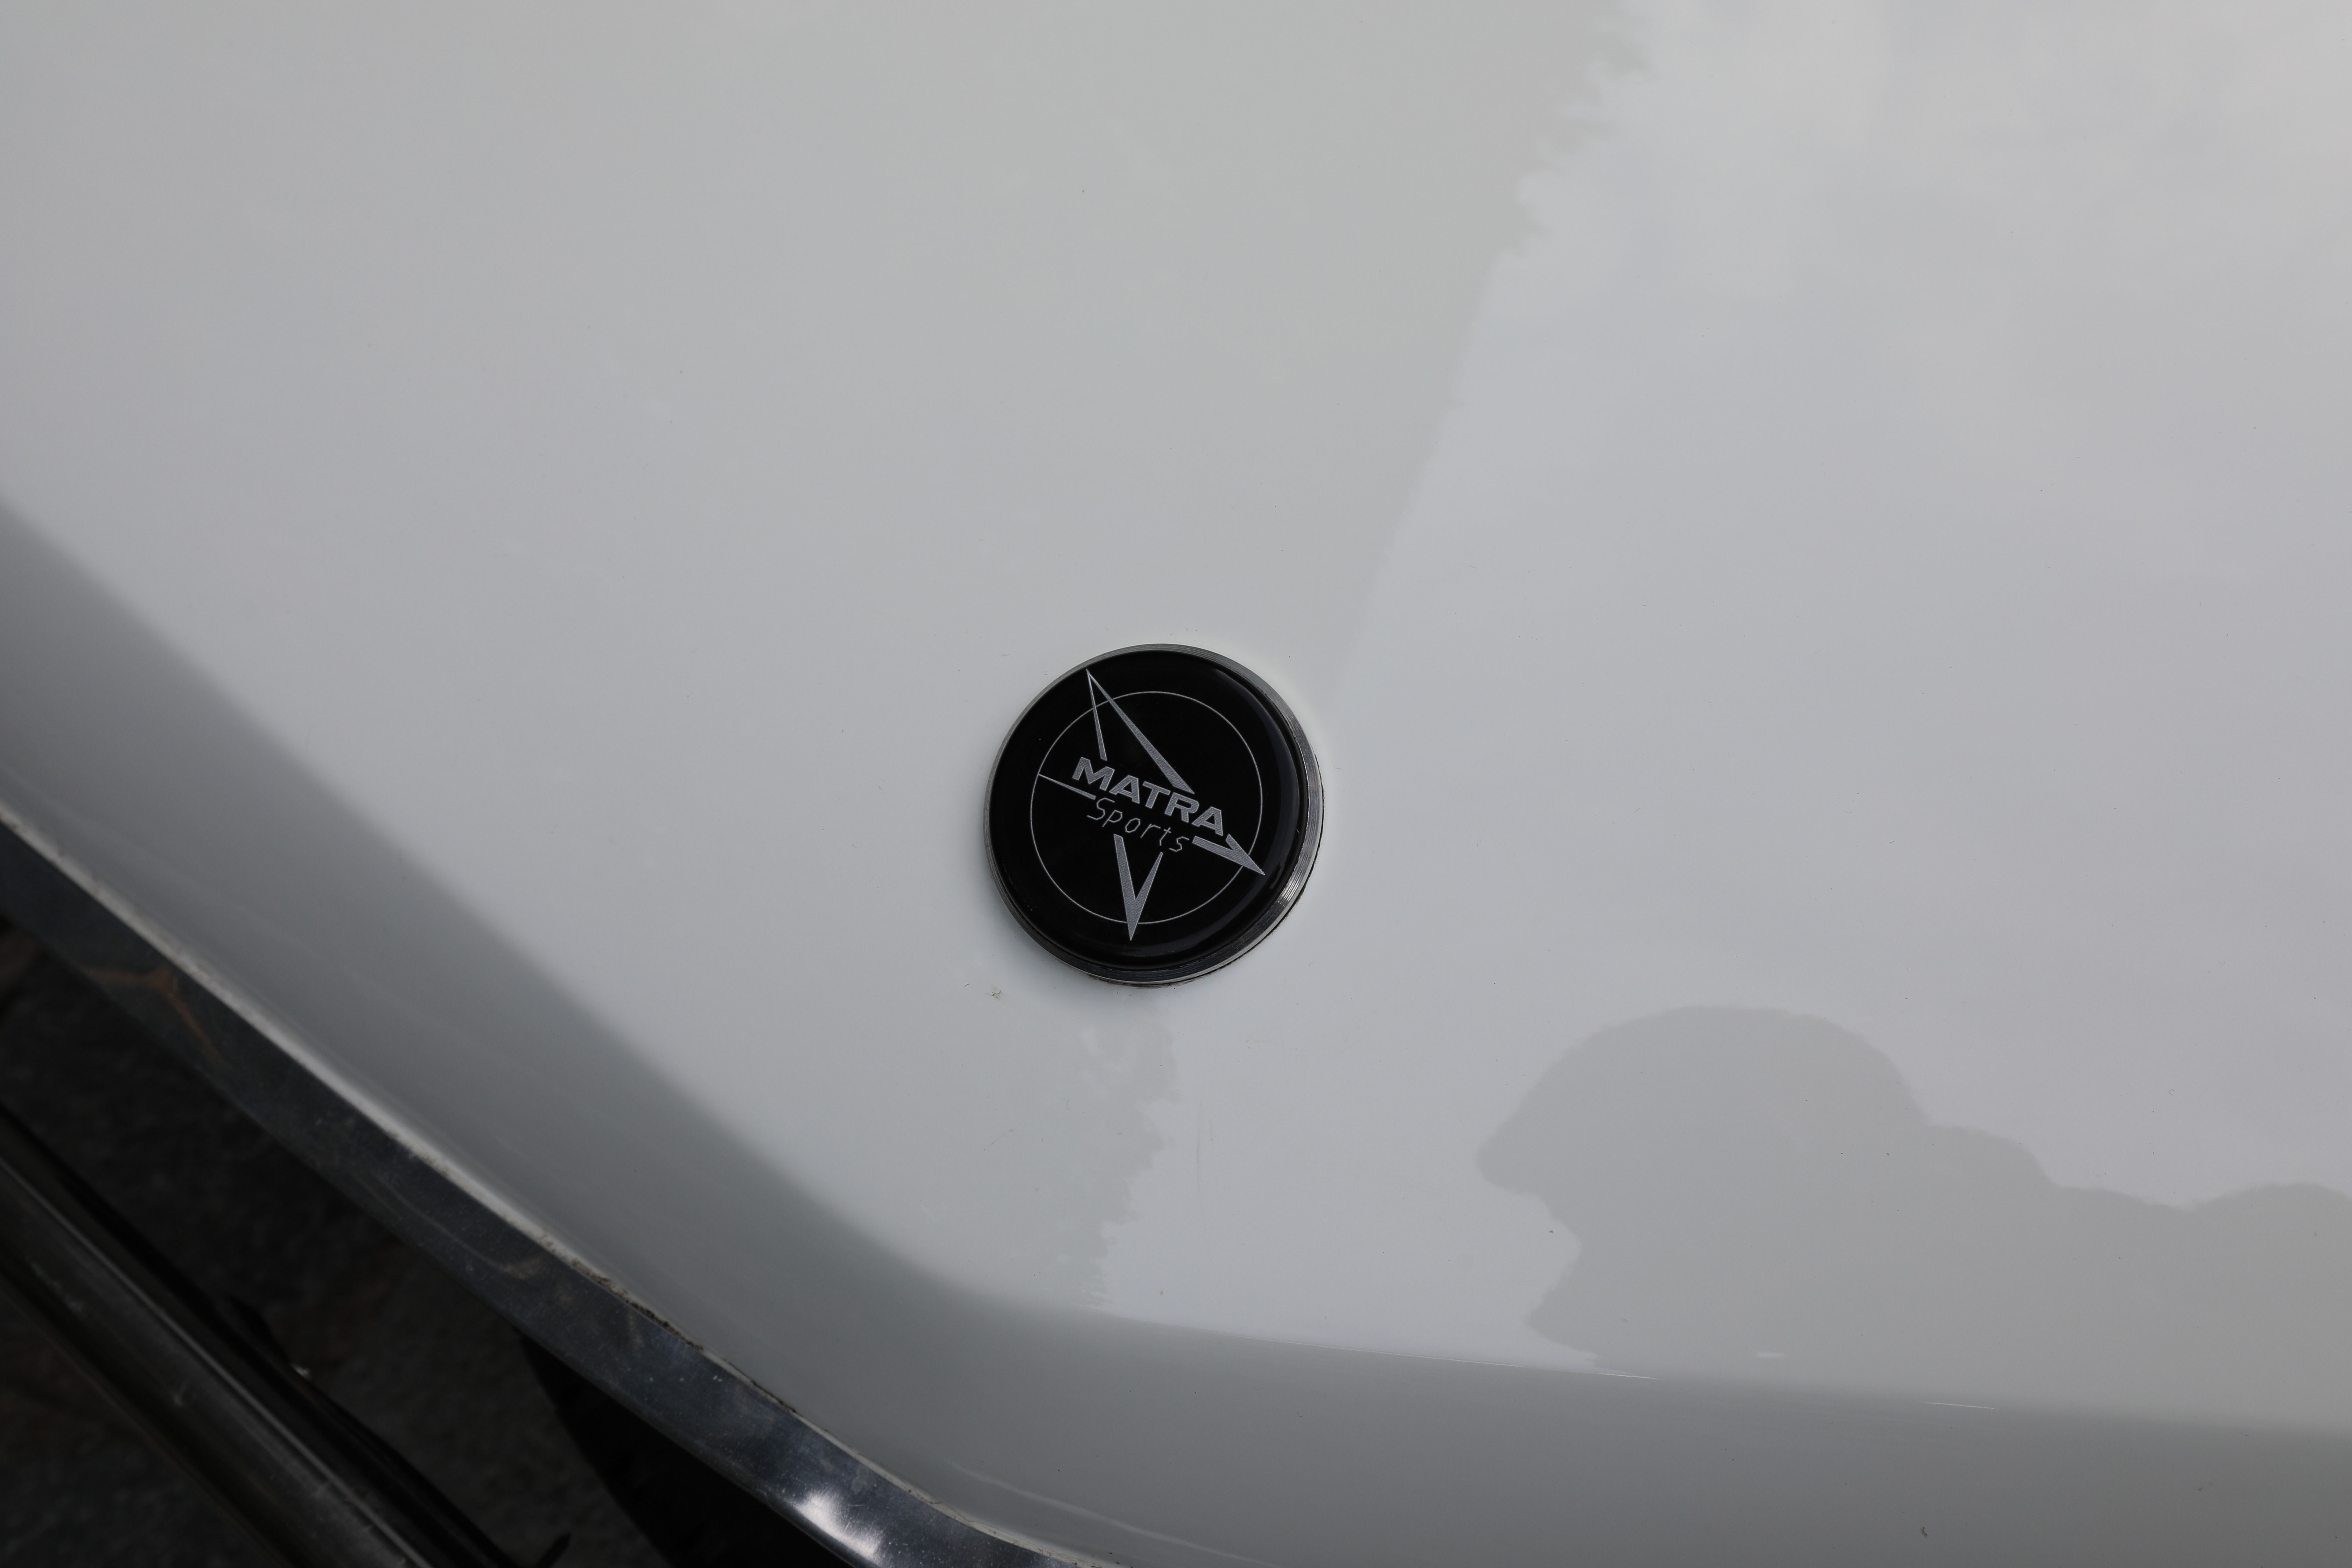 På Matra sin versjon var naturlig nok Chrysler-merkene borte, og erstattet med Matra-logoer.